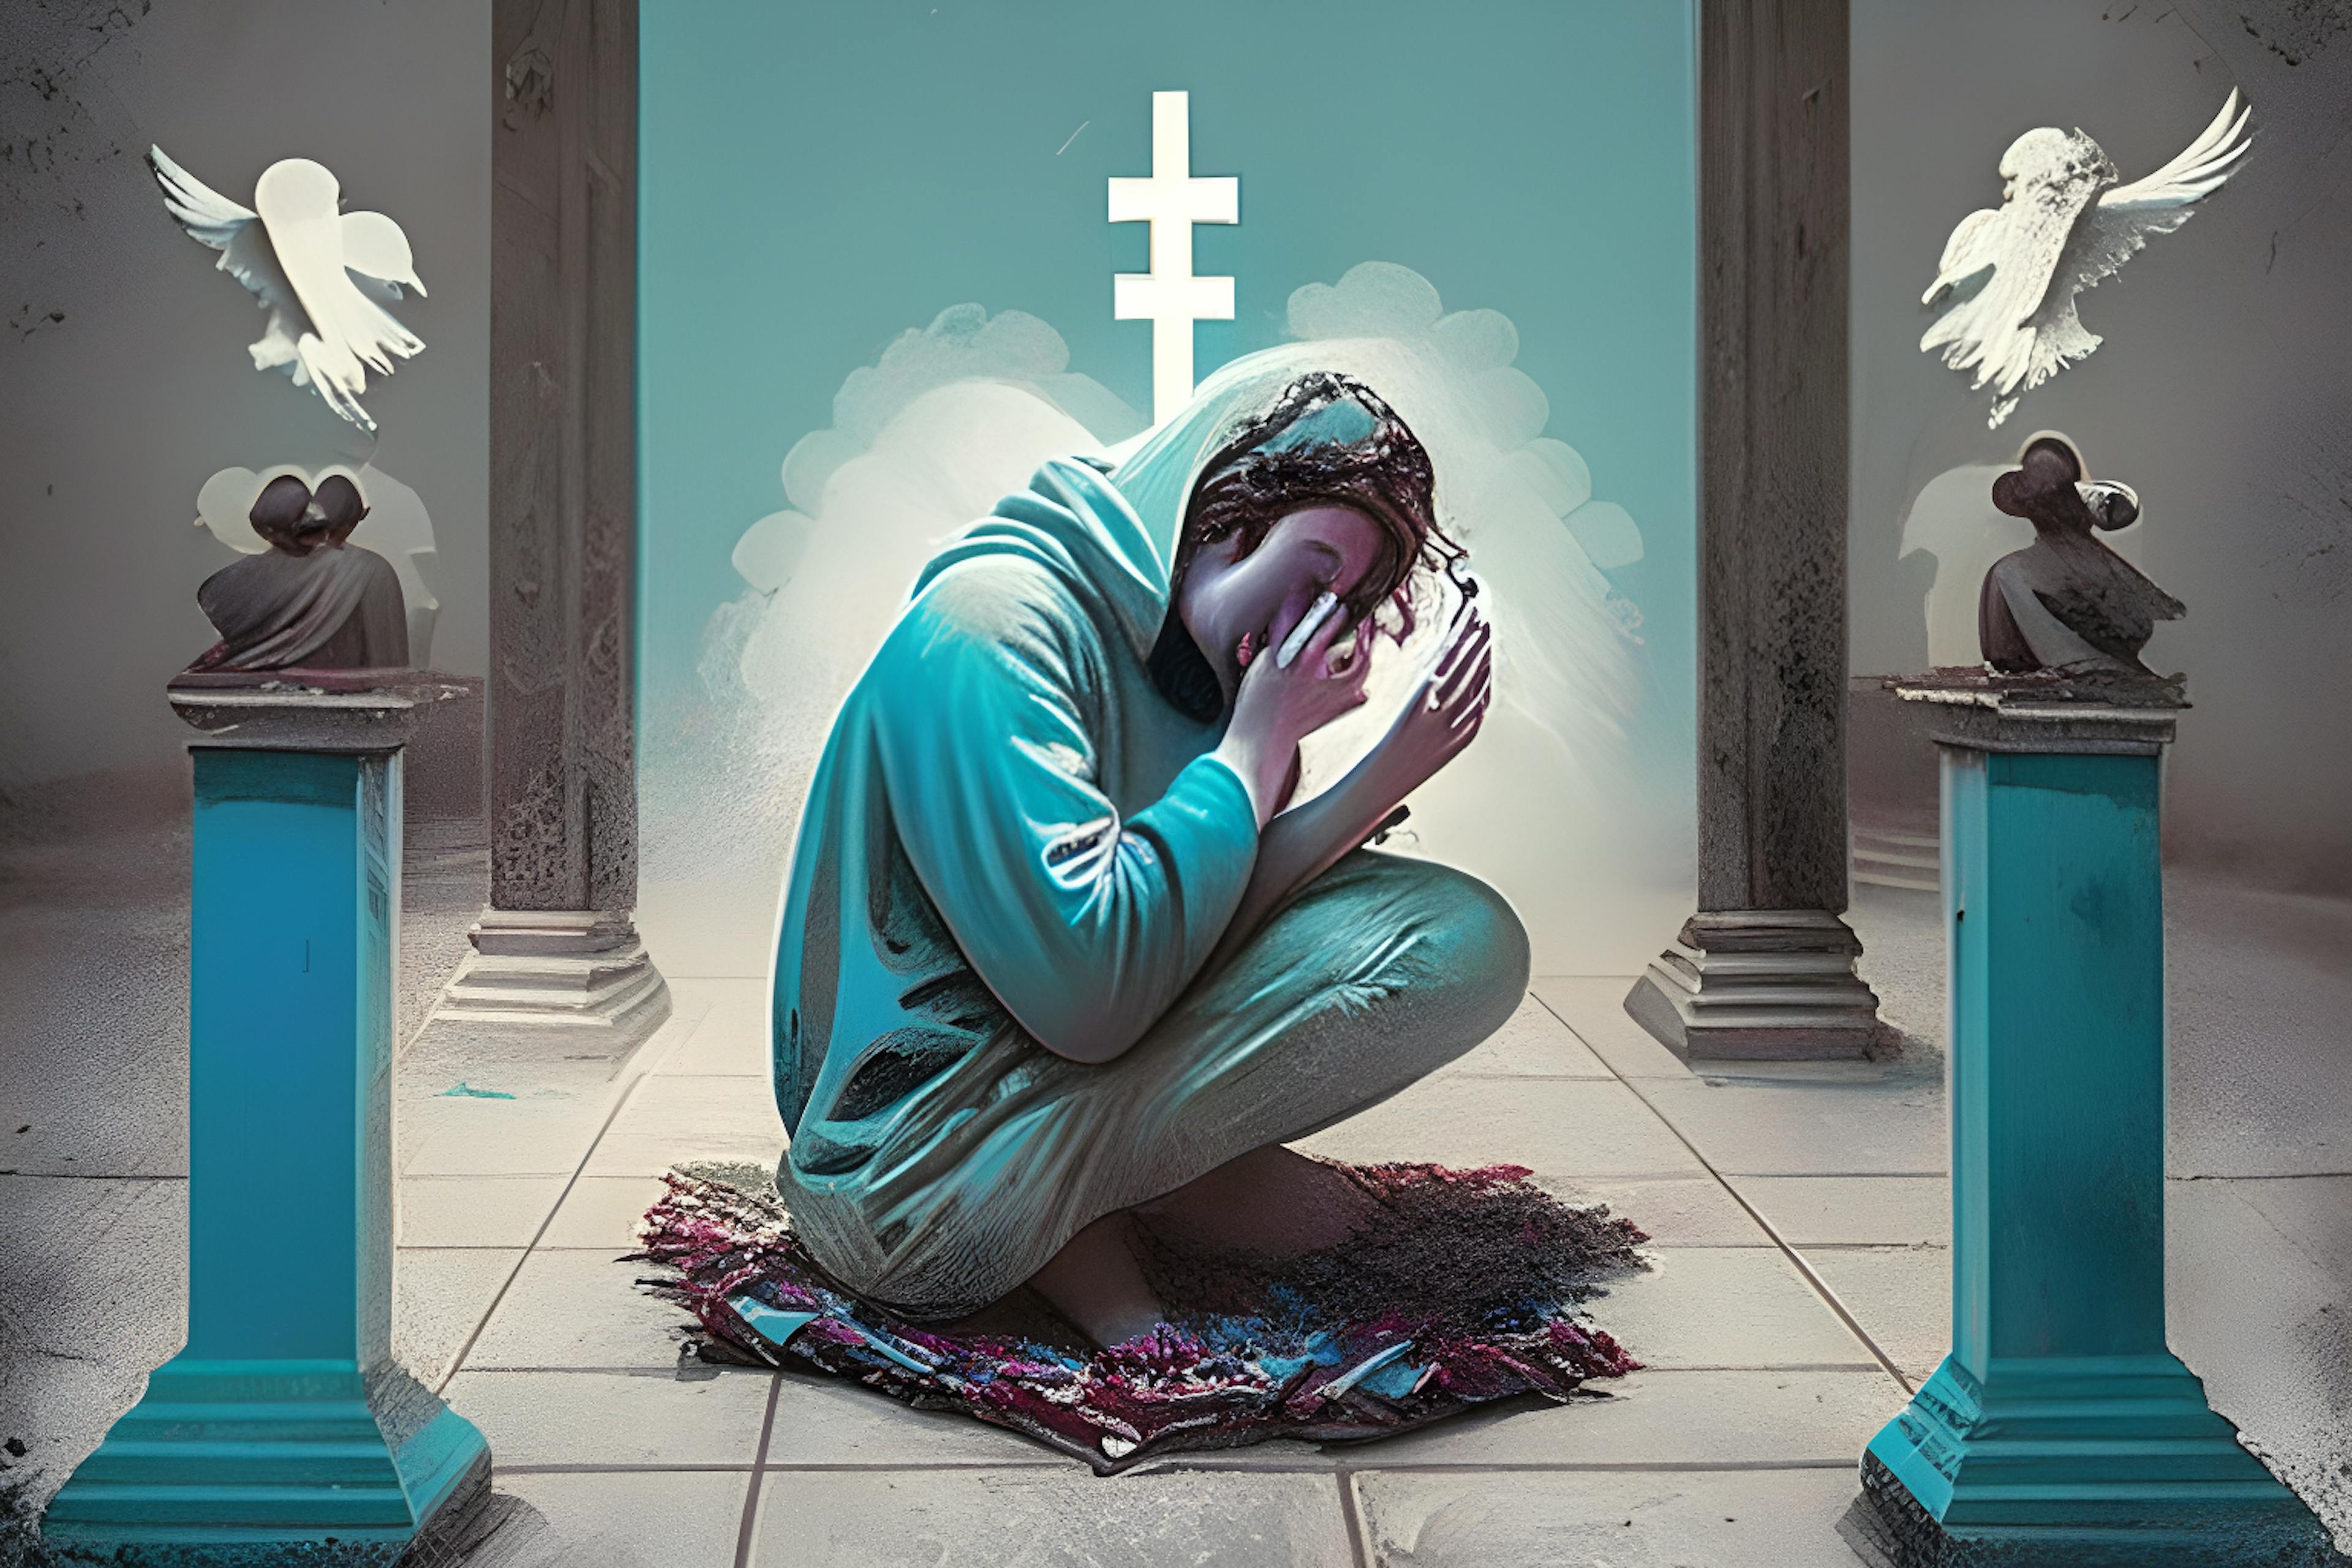 HackerNoon AI Image Generation, Eingabeaufforderung „Eine Person, die süchtig nach sozialen Medien ist und zu den Göttern betet“